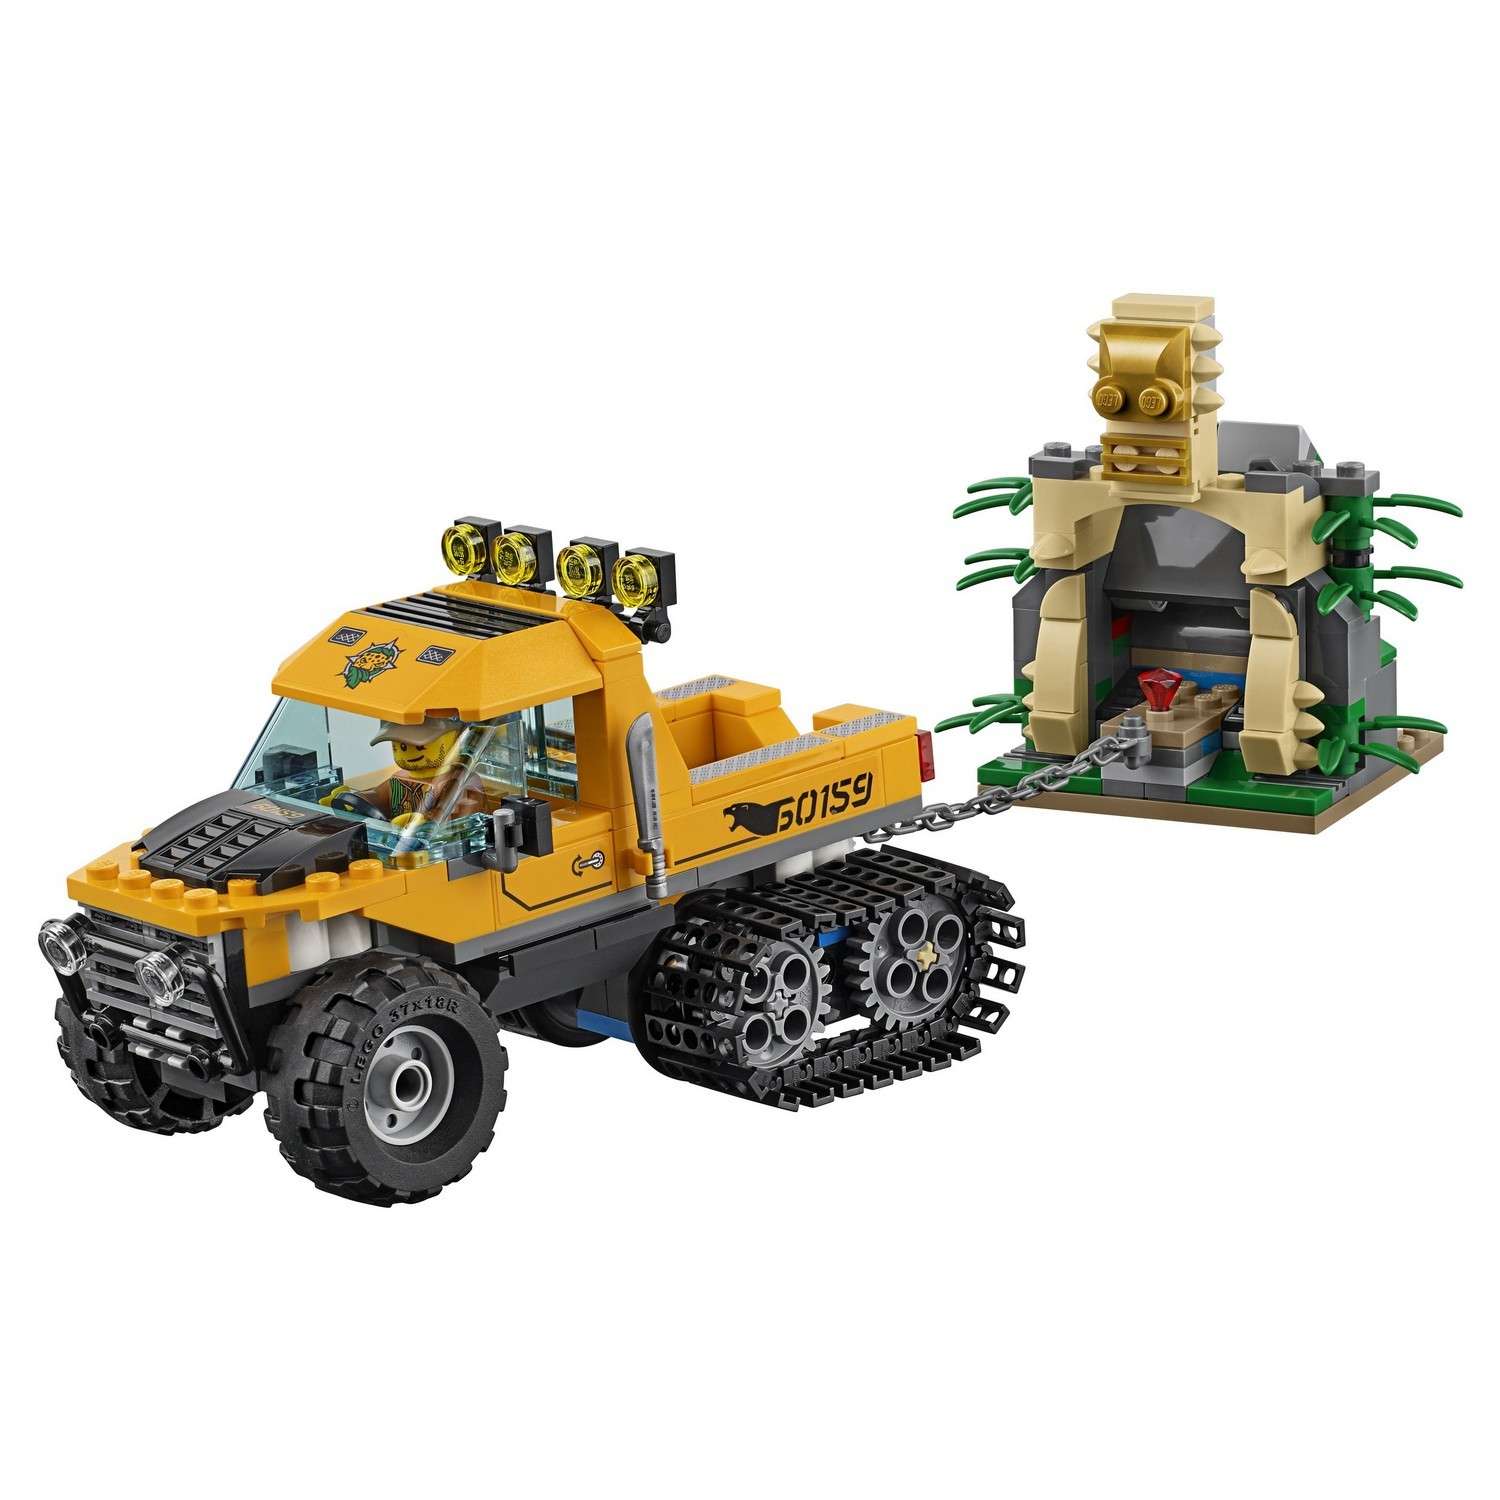 Конструктор LEGO City Jungle Explorers Миссия "Исследование джунглей" (60159) - фото 9